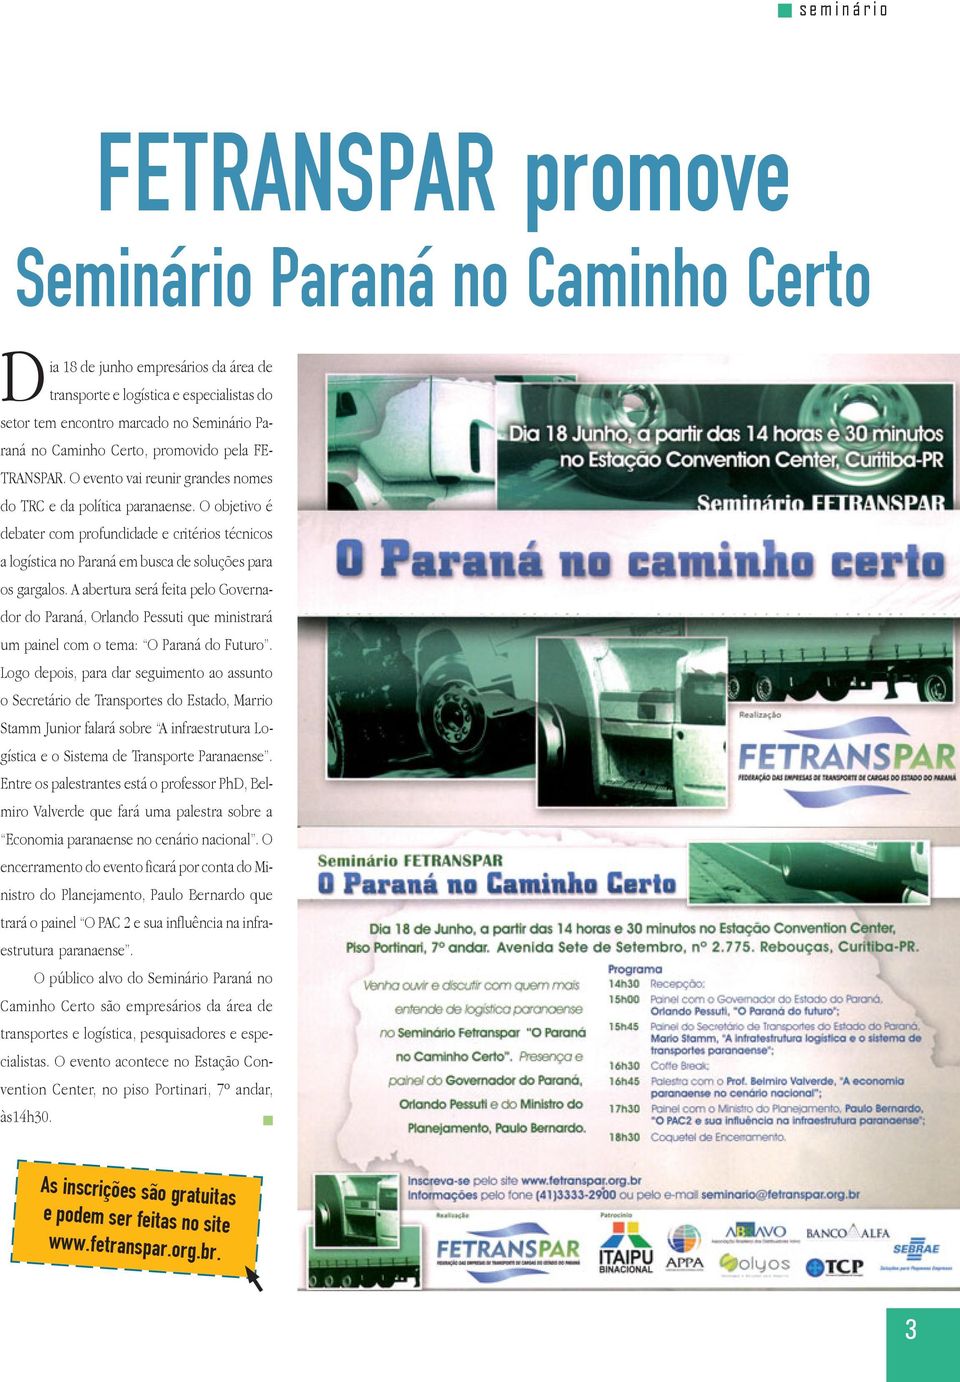 O objetivo é debater com profundidade e critérios técnicos a logística no Paraná em busca de soluções para os gargalos.